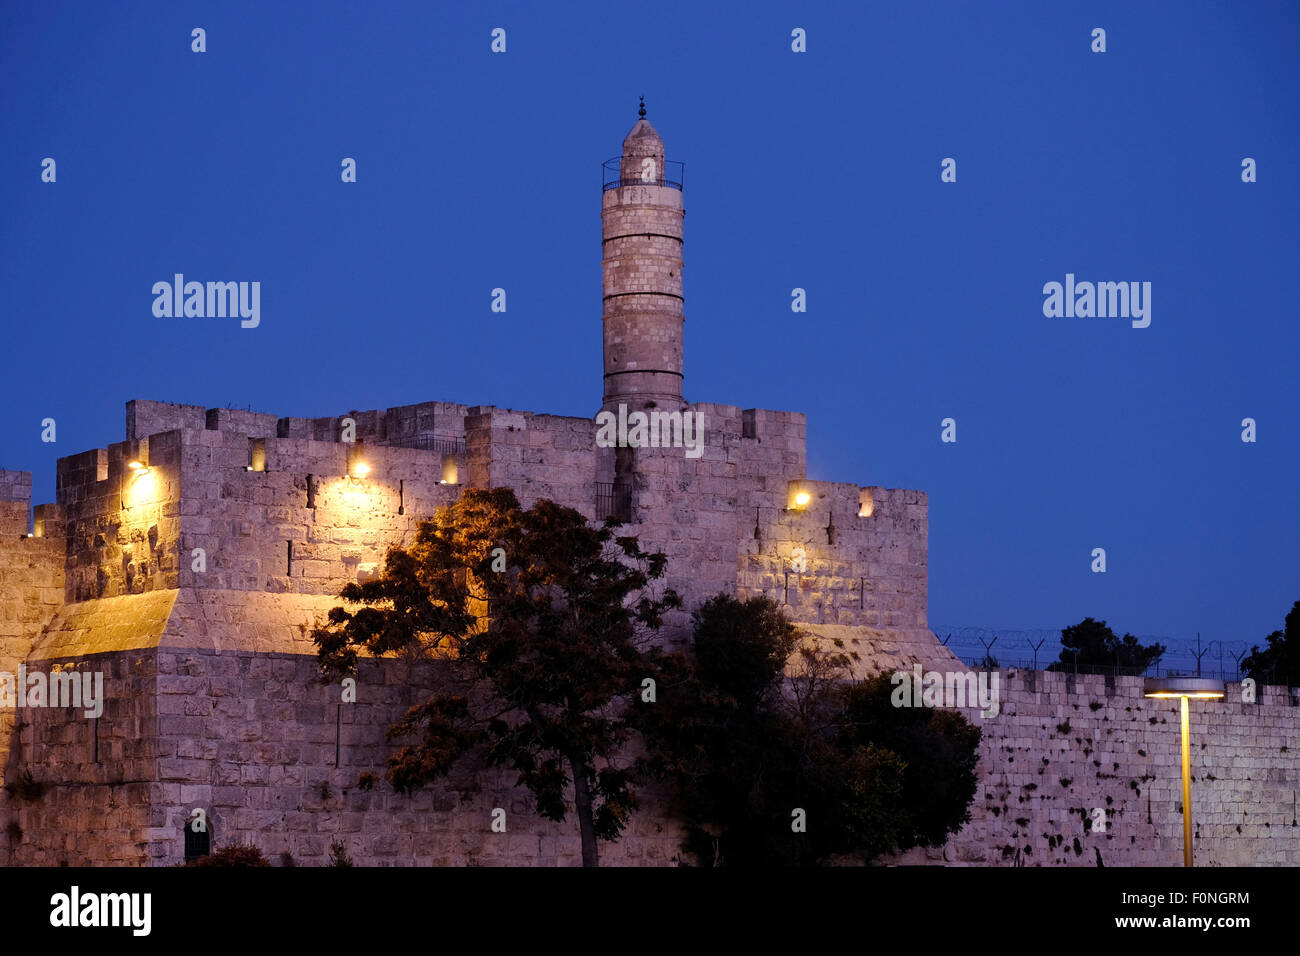 La Tour de David, également connu sous le nom de la citadelle de Jérusalem et les murs ottomans vieille ville Jérusalem Israël Banque D'Images